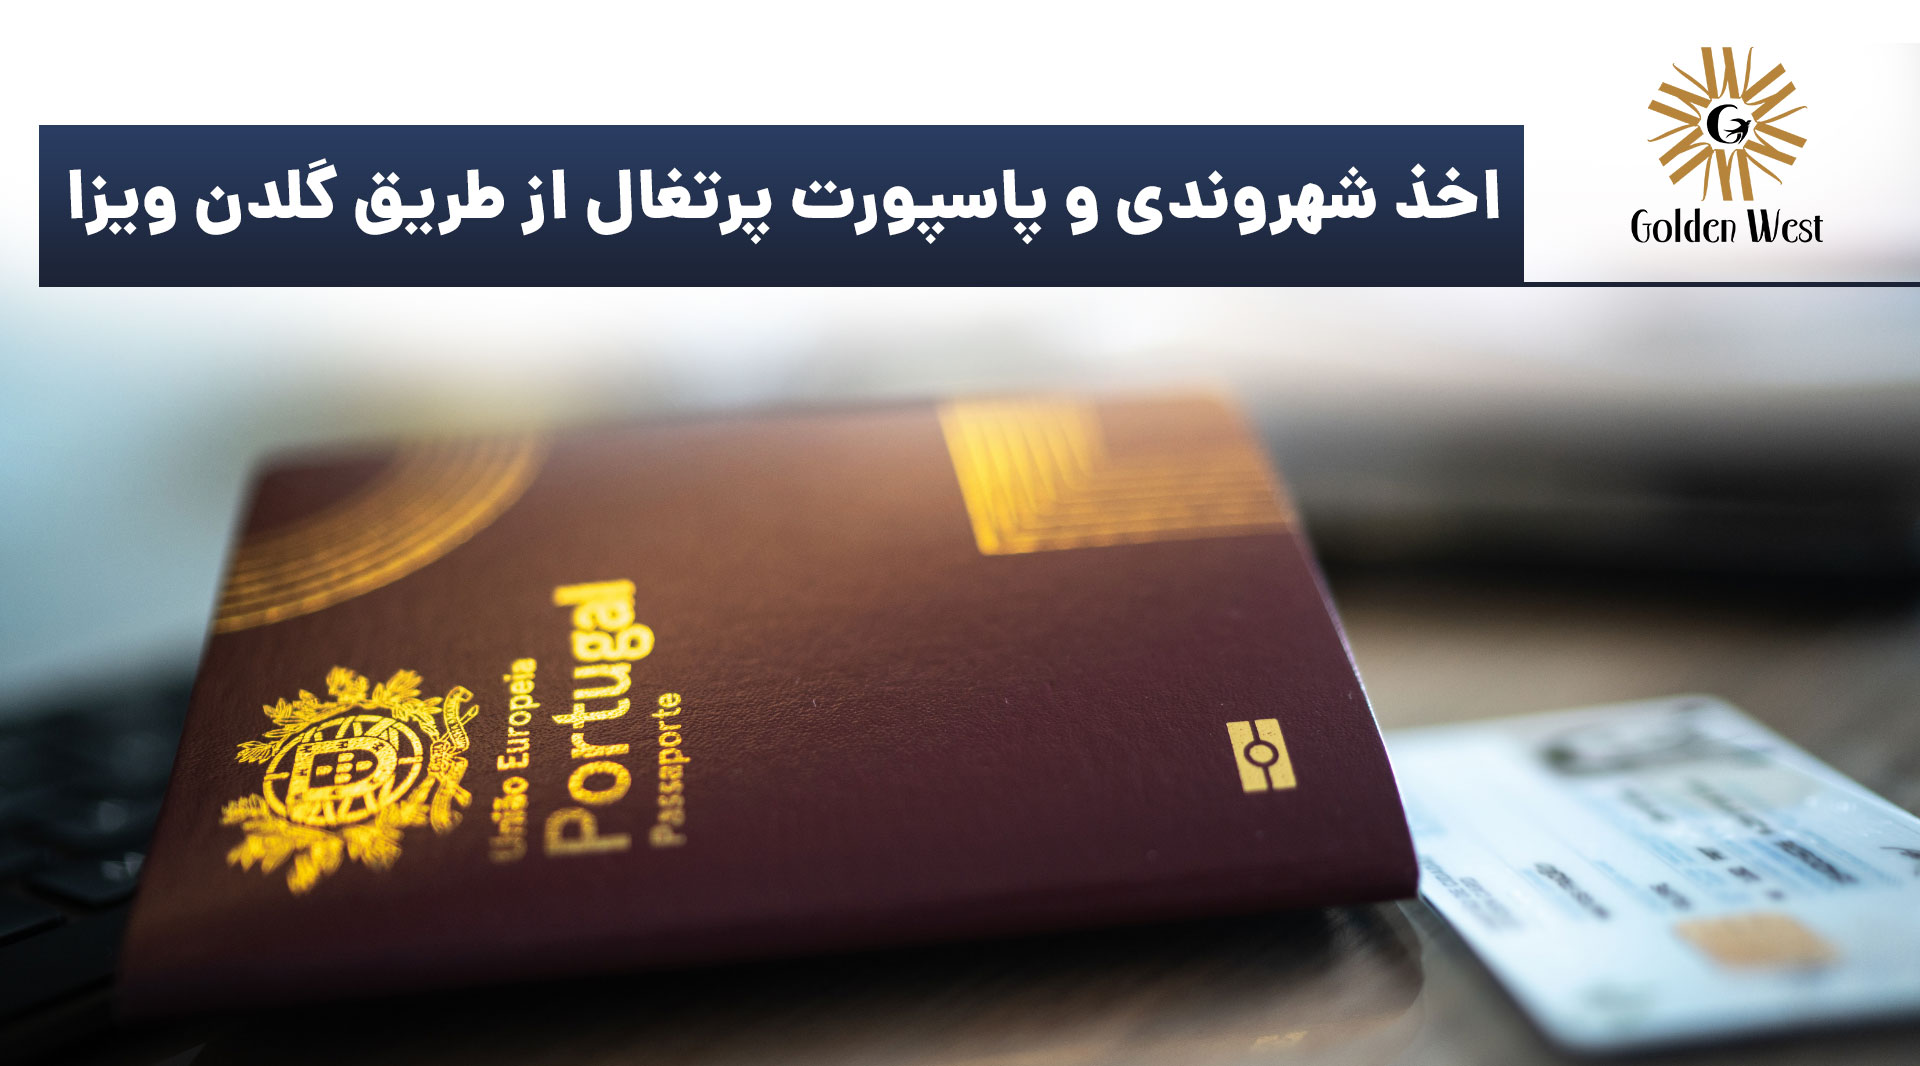 پاسپورت پرتغال از طریق گلدن ویزا